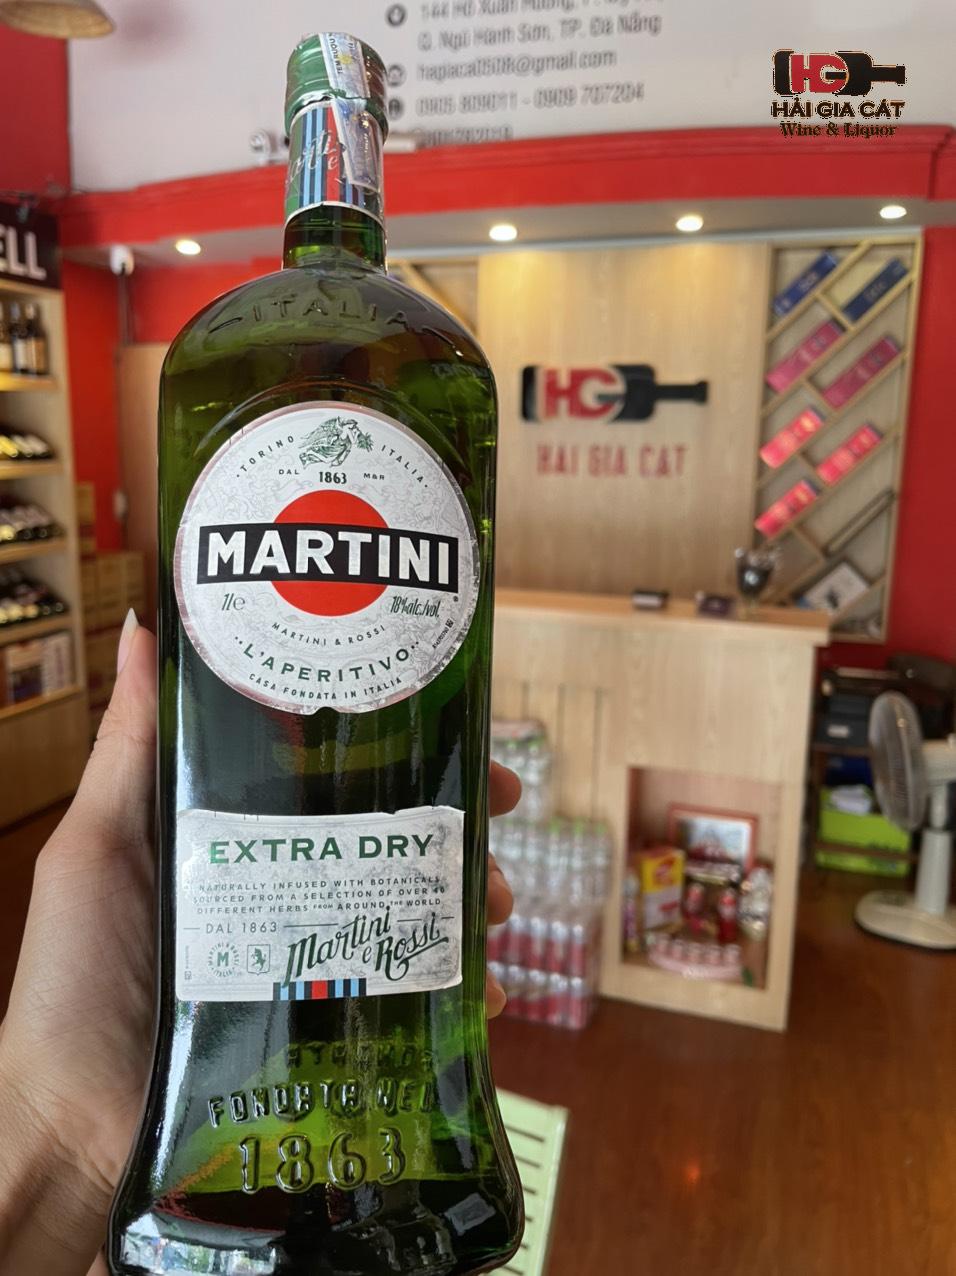 Rượu Martini Extra Dry tại Hải Gia Cát